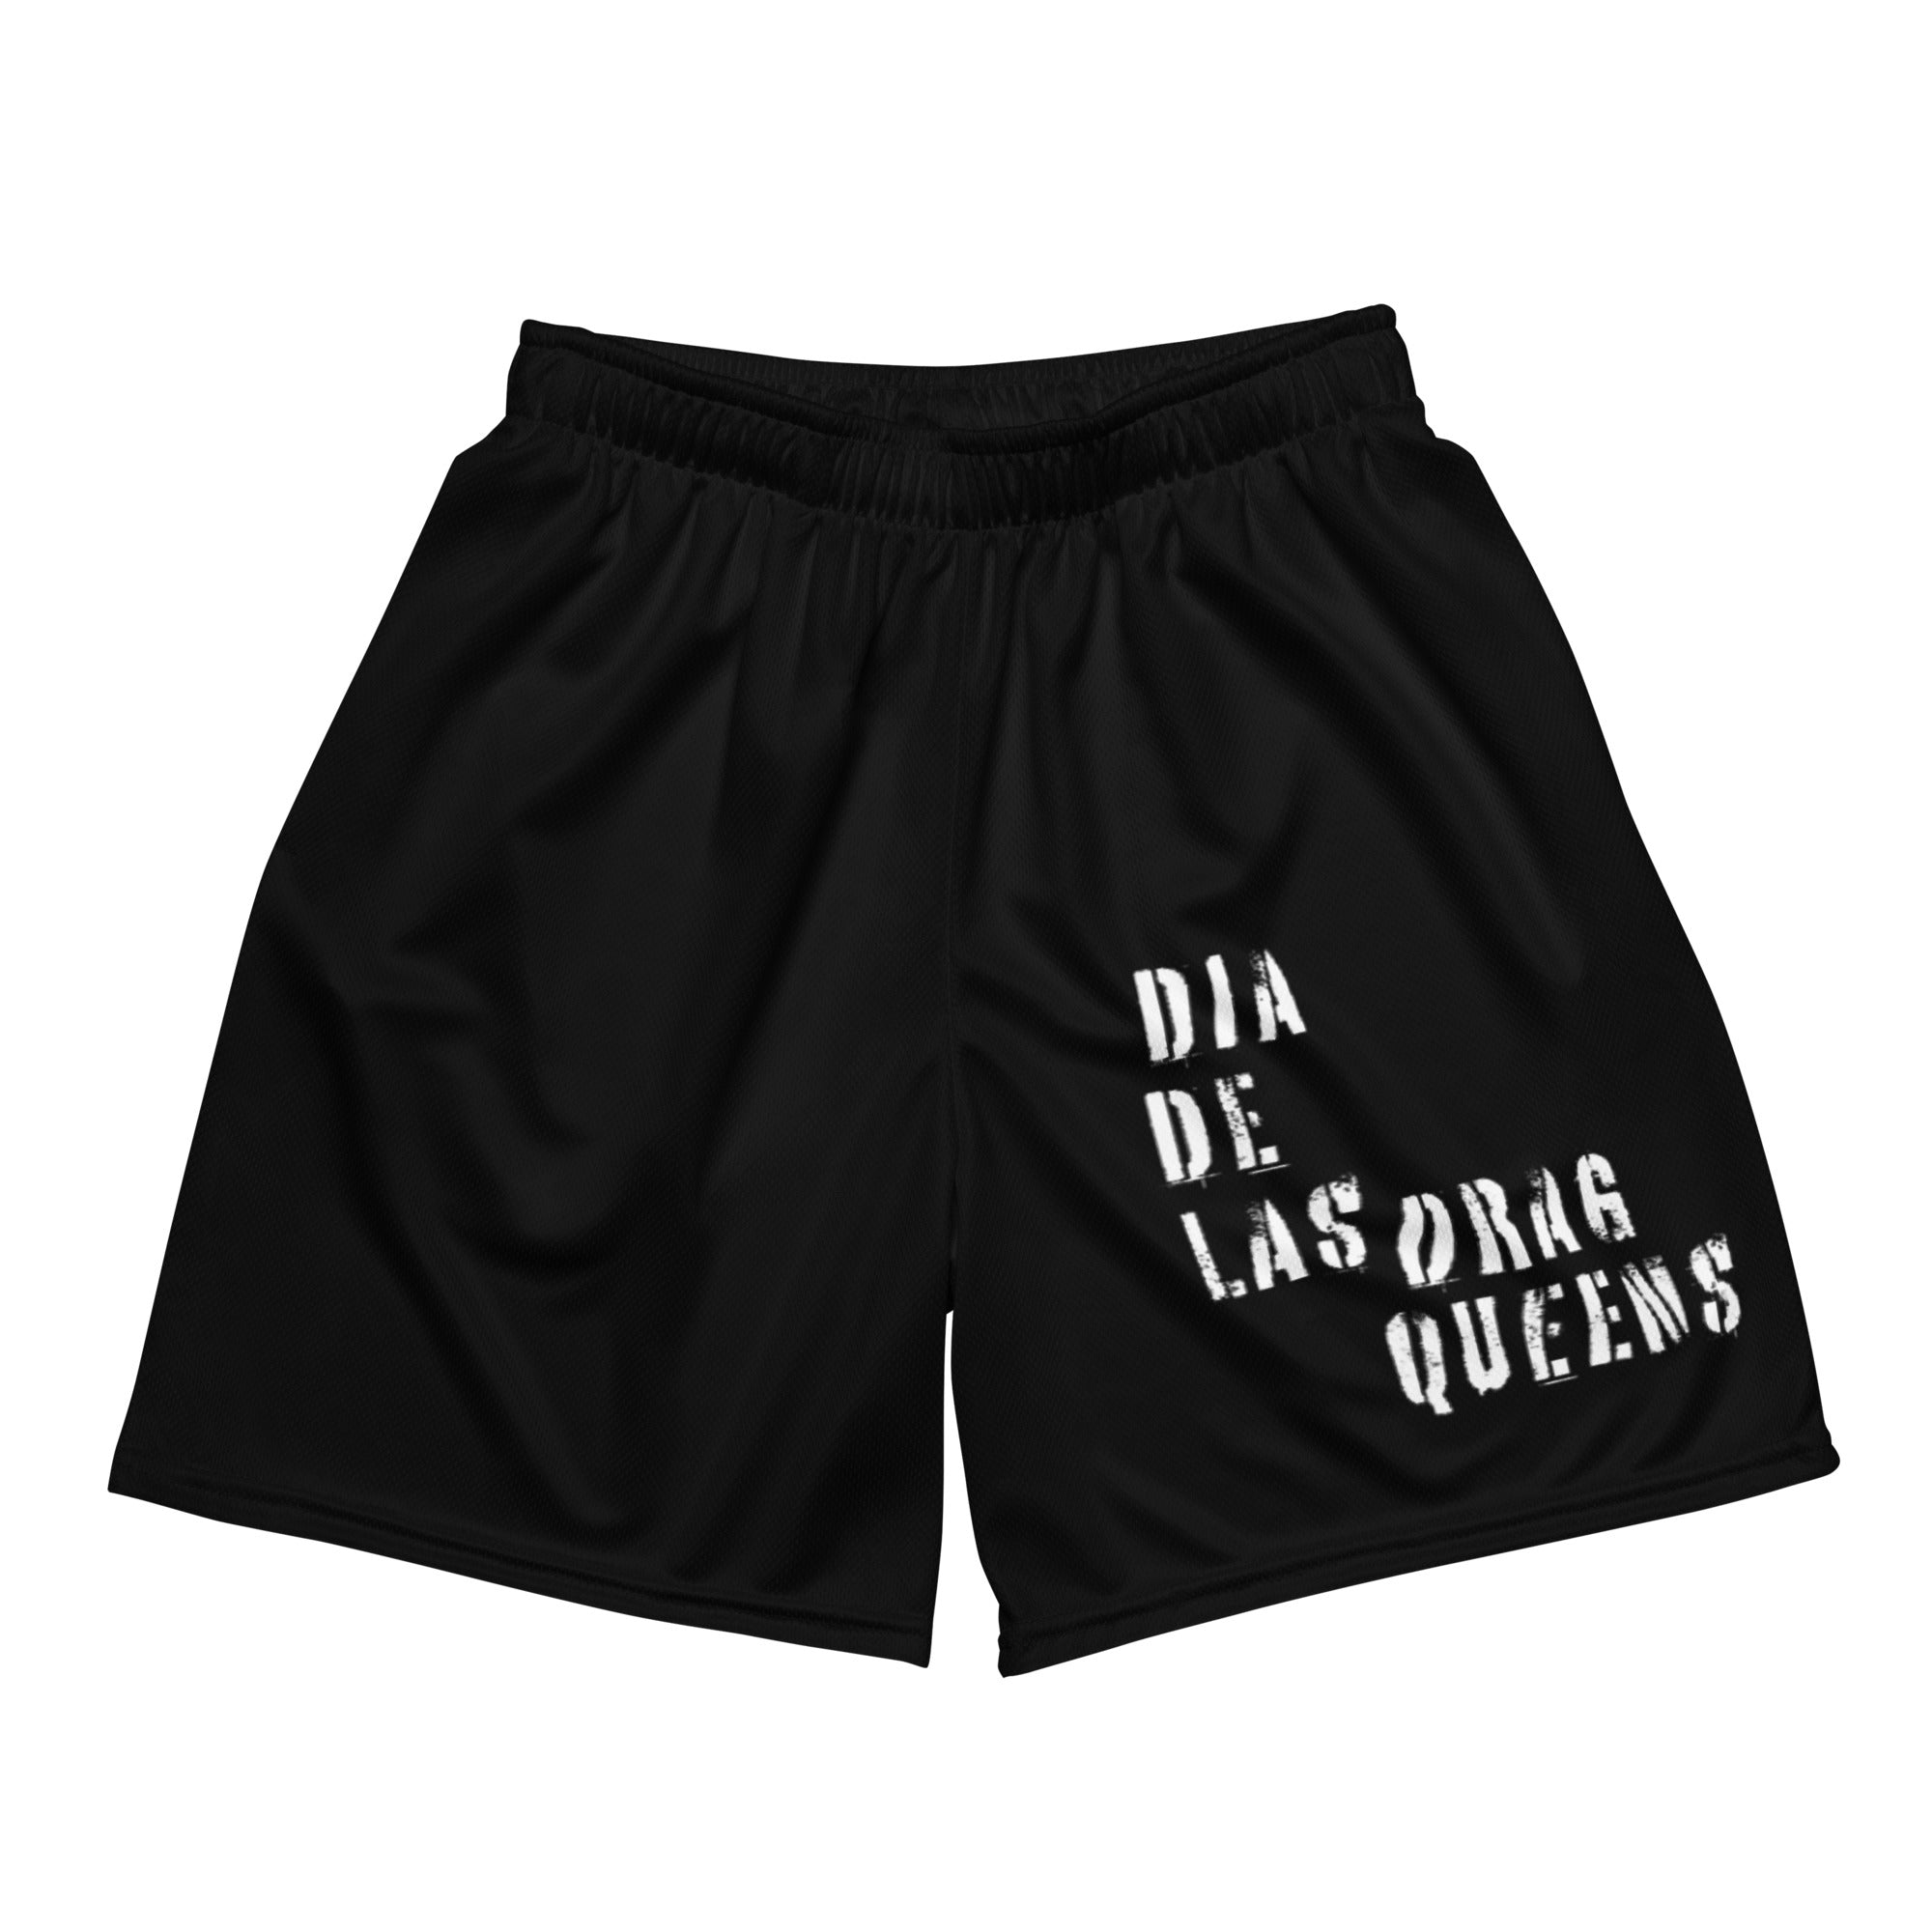 Dia de las Drag Queens mesh shorts